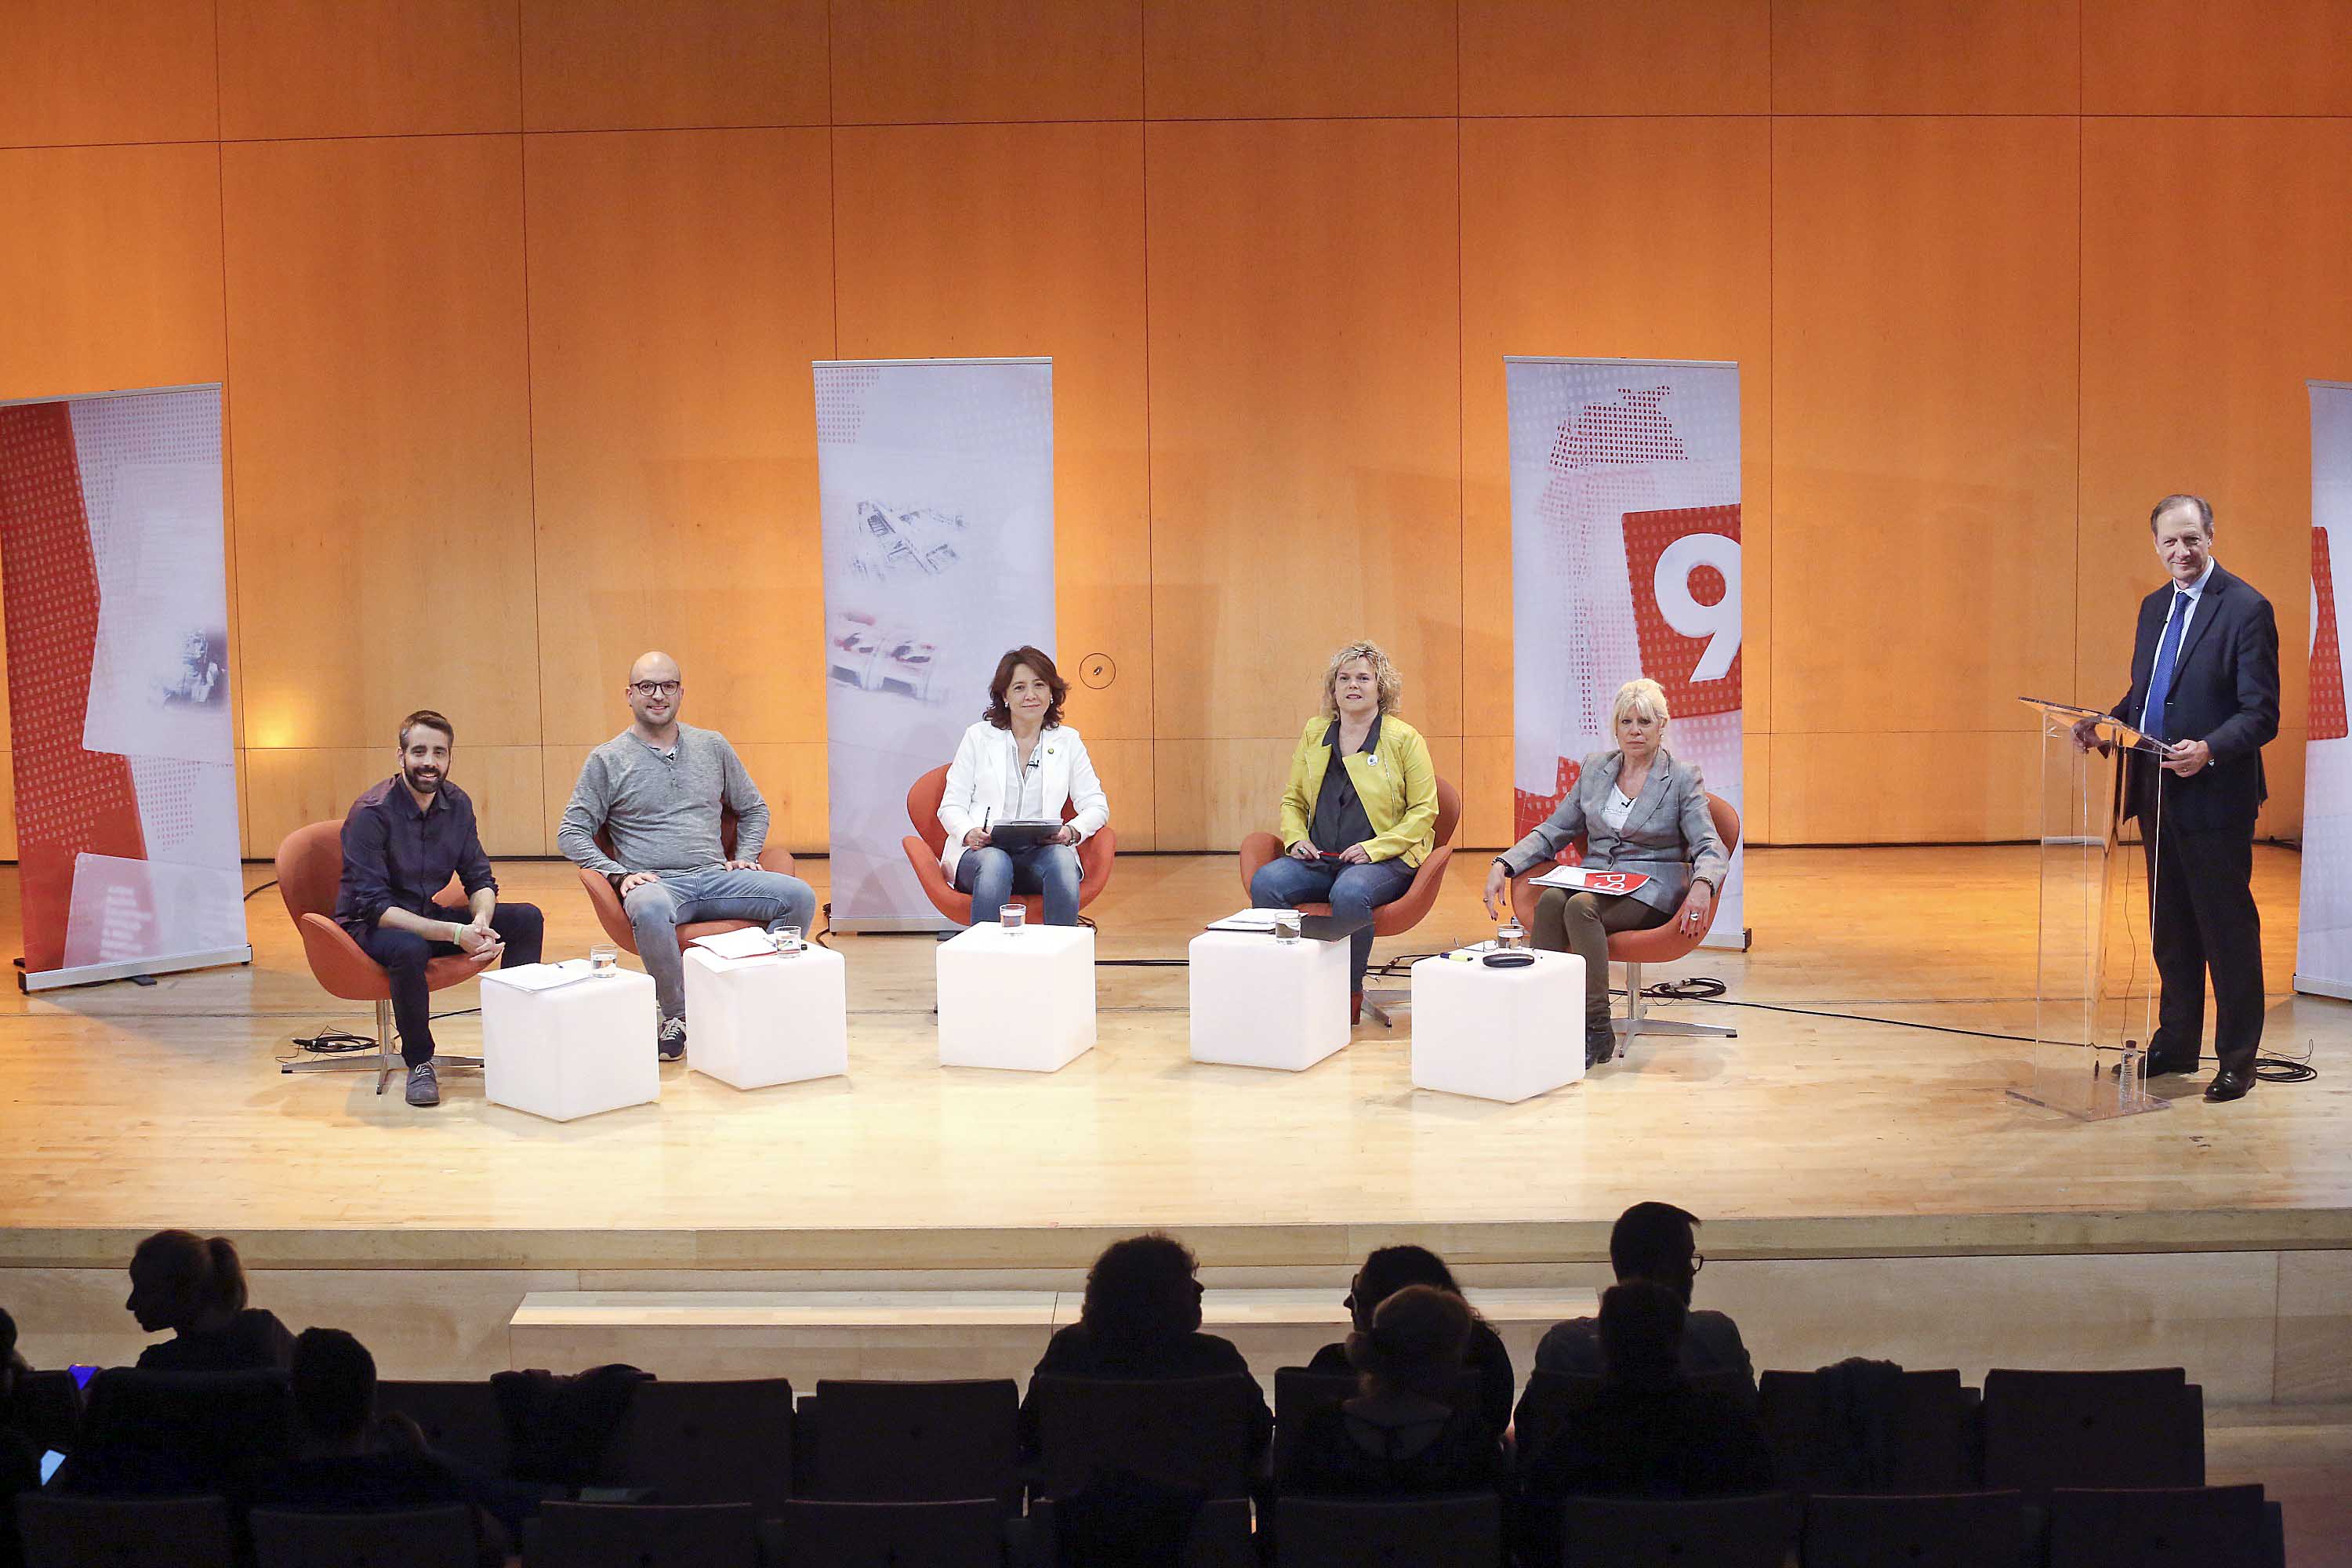 Arnau Martí, Joan Coma, Anna Erra, Maria Balasch i Carme Tena, amb el moderador del debat, Jordi Molet, dimecres a L’Atlàntida